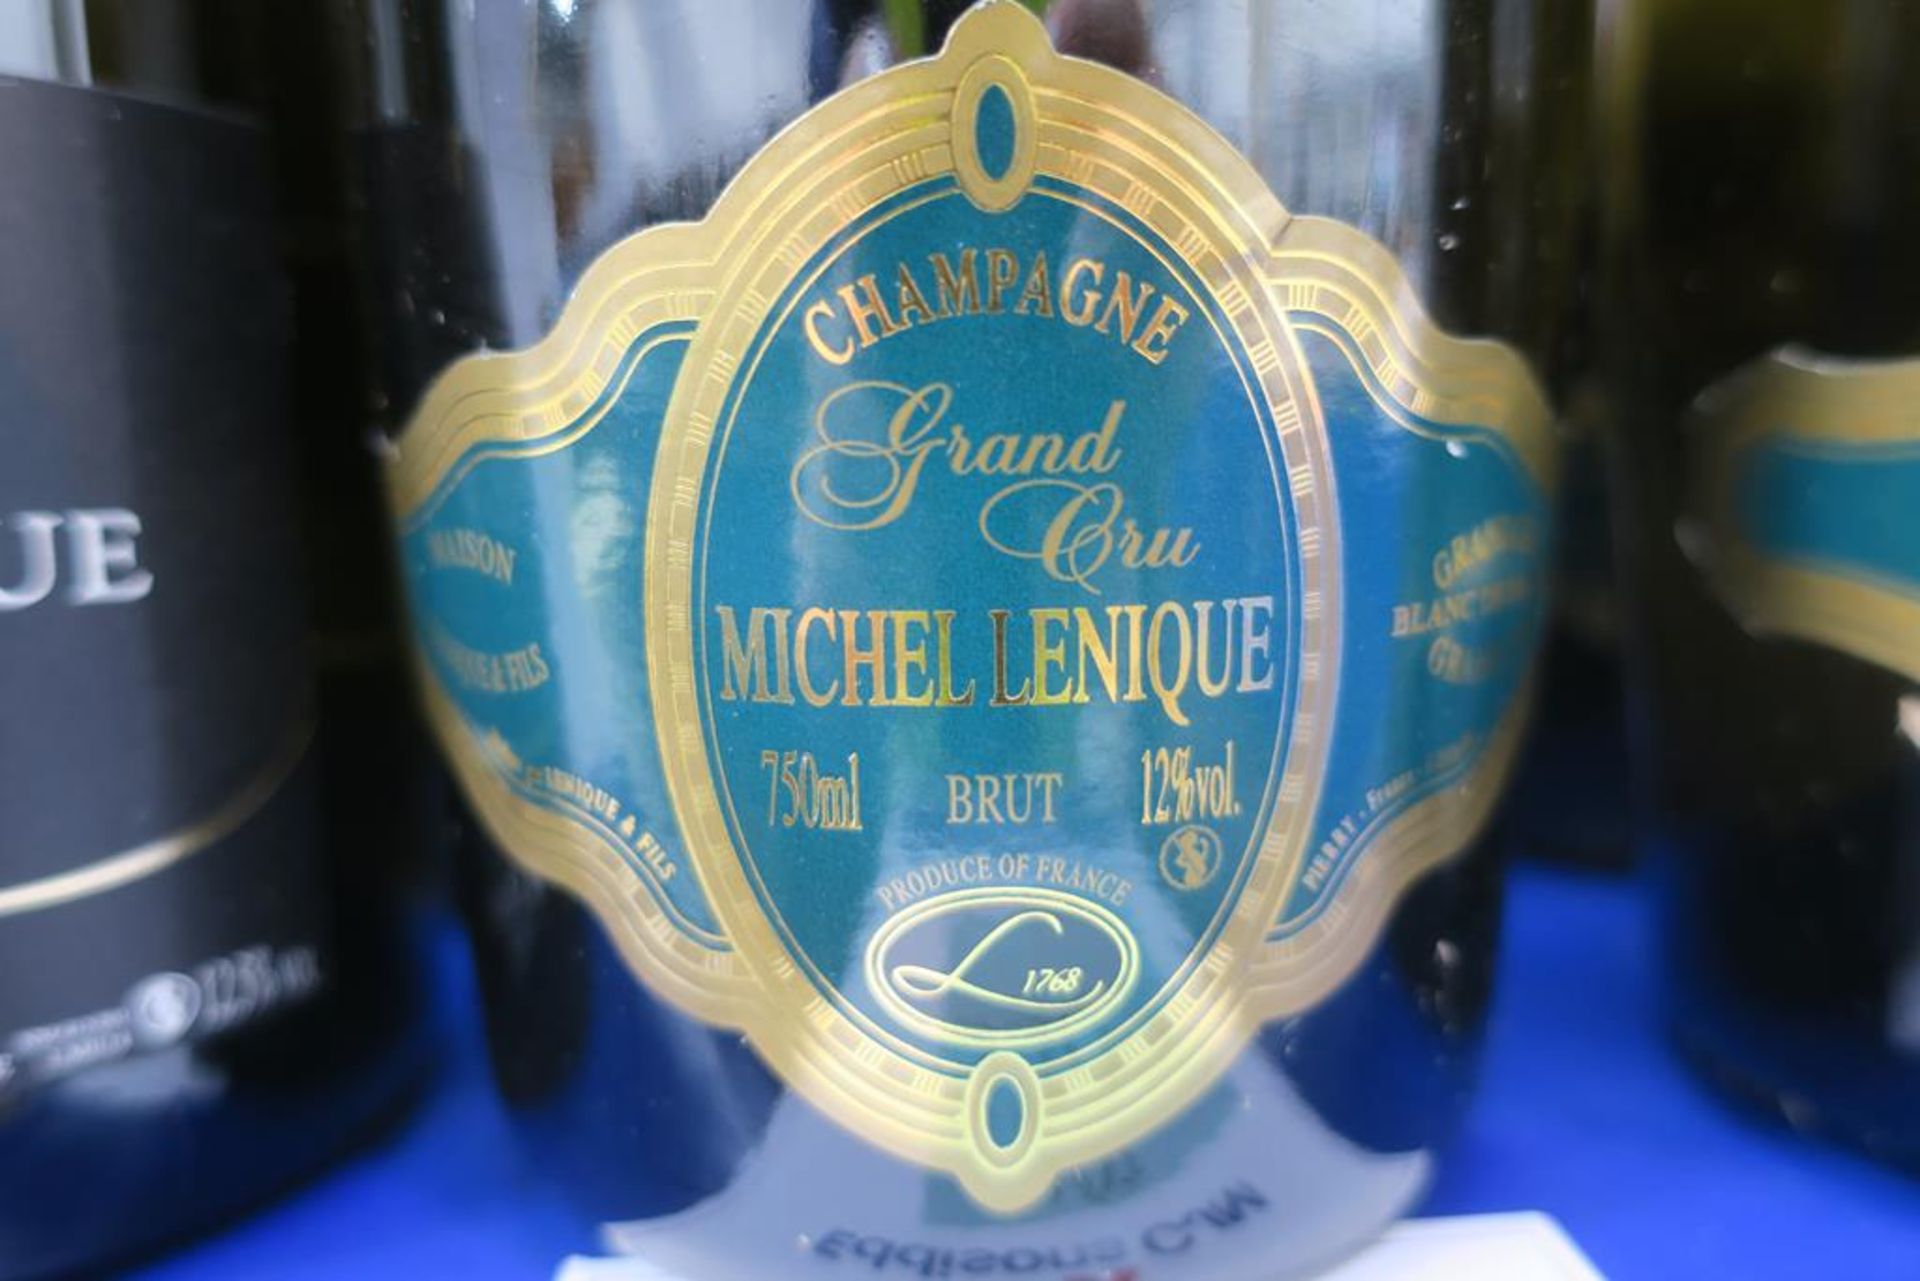 Maison Lenique and Michel Lenique Champagne - Image 3 of 3